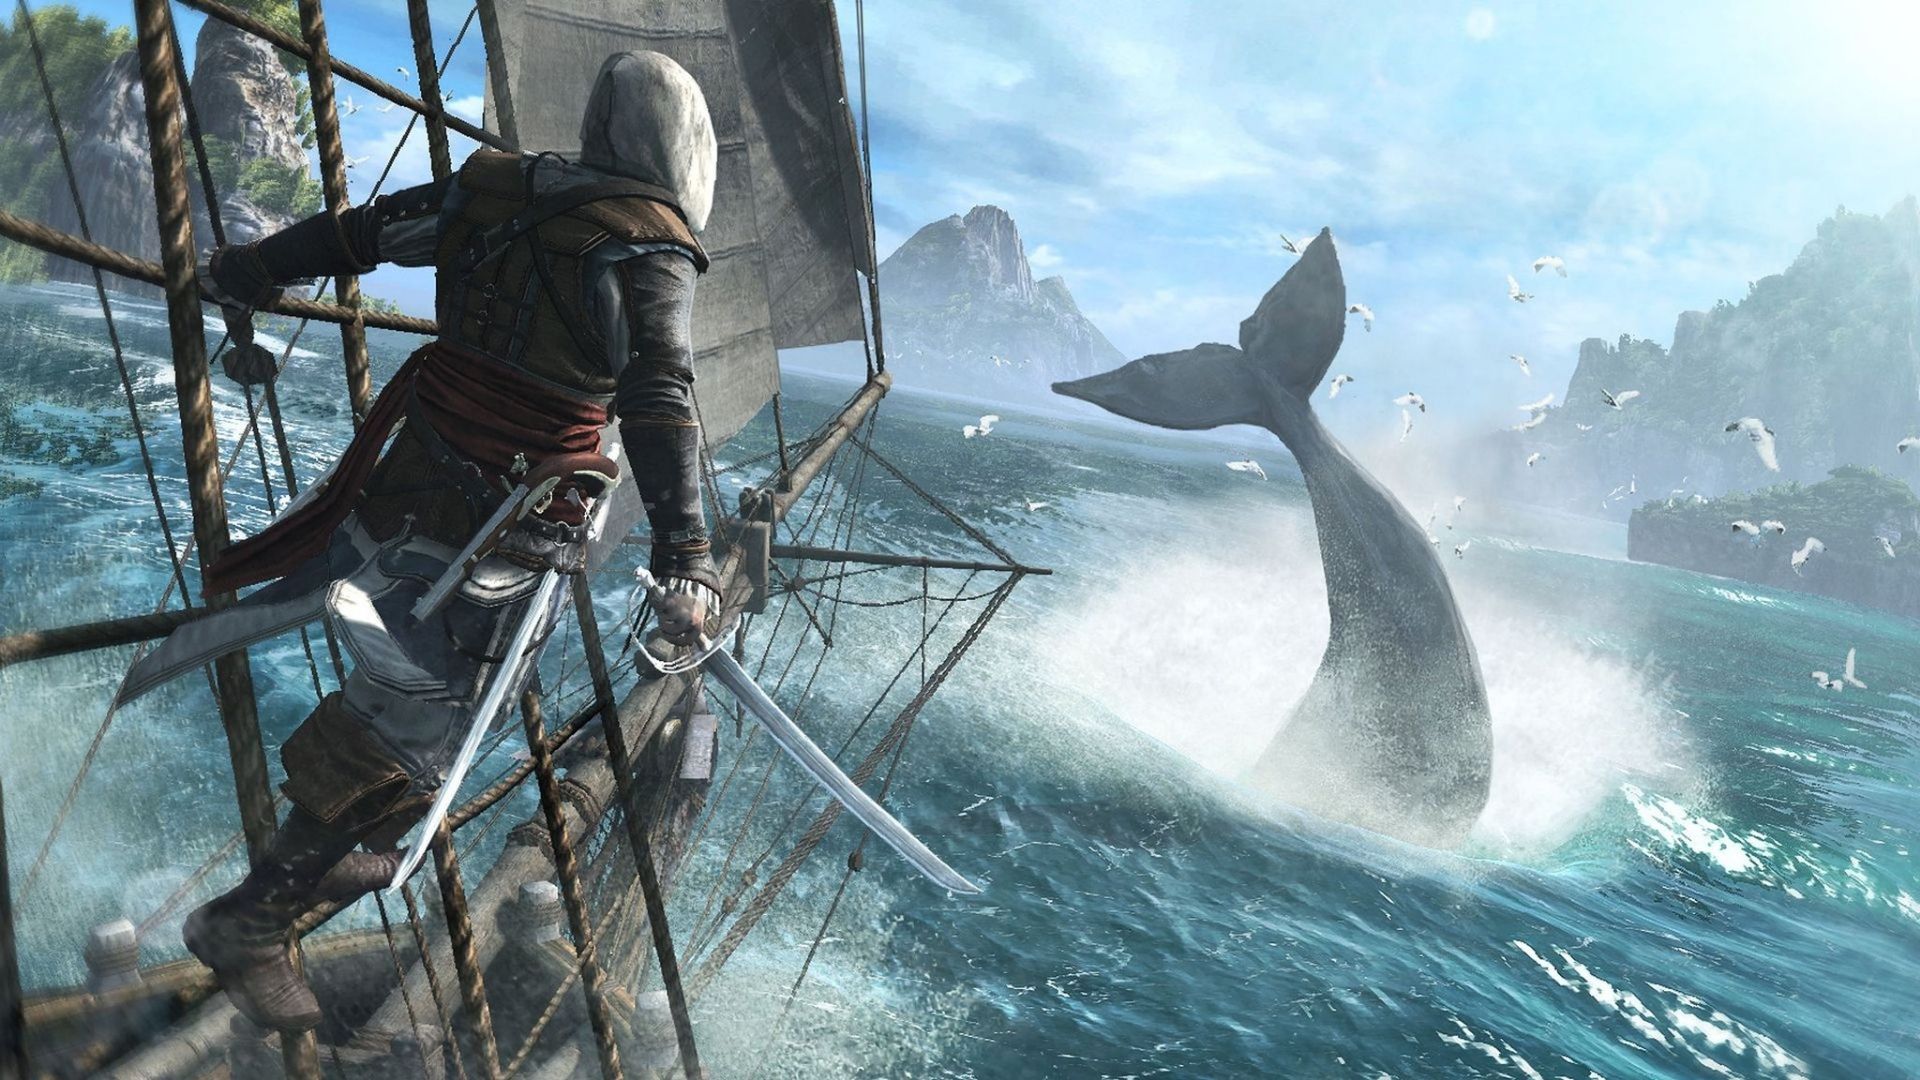 O personagem principal de Assassin's Creed 4 Black Flag, pendurado nas cordas de um navio com a espada desembainhada, observando uma baleia mergulhando na água.